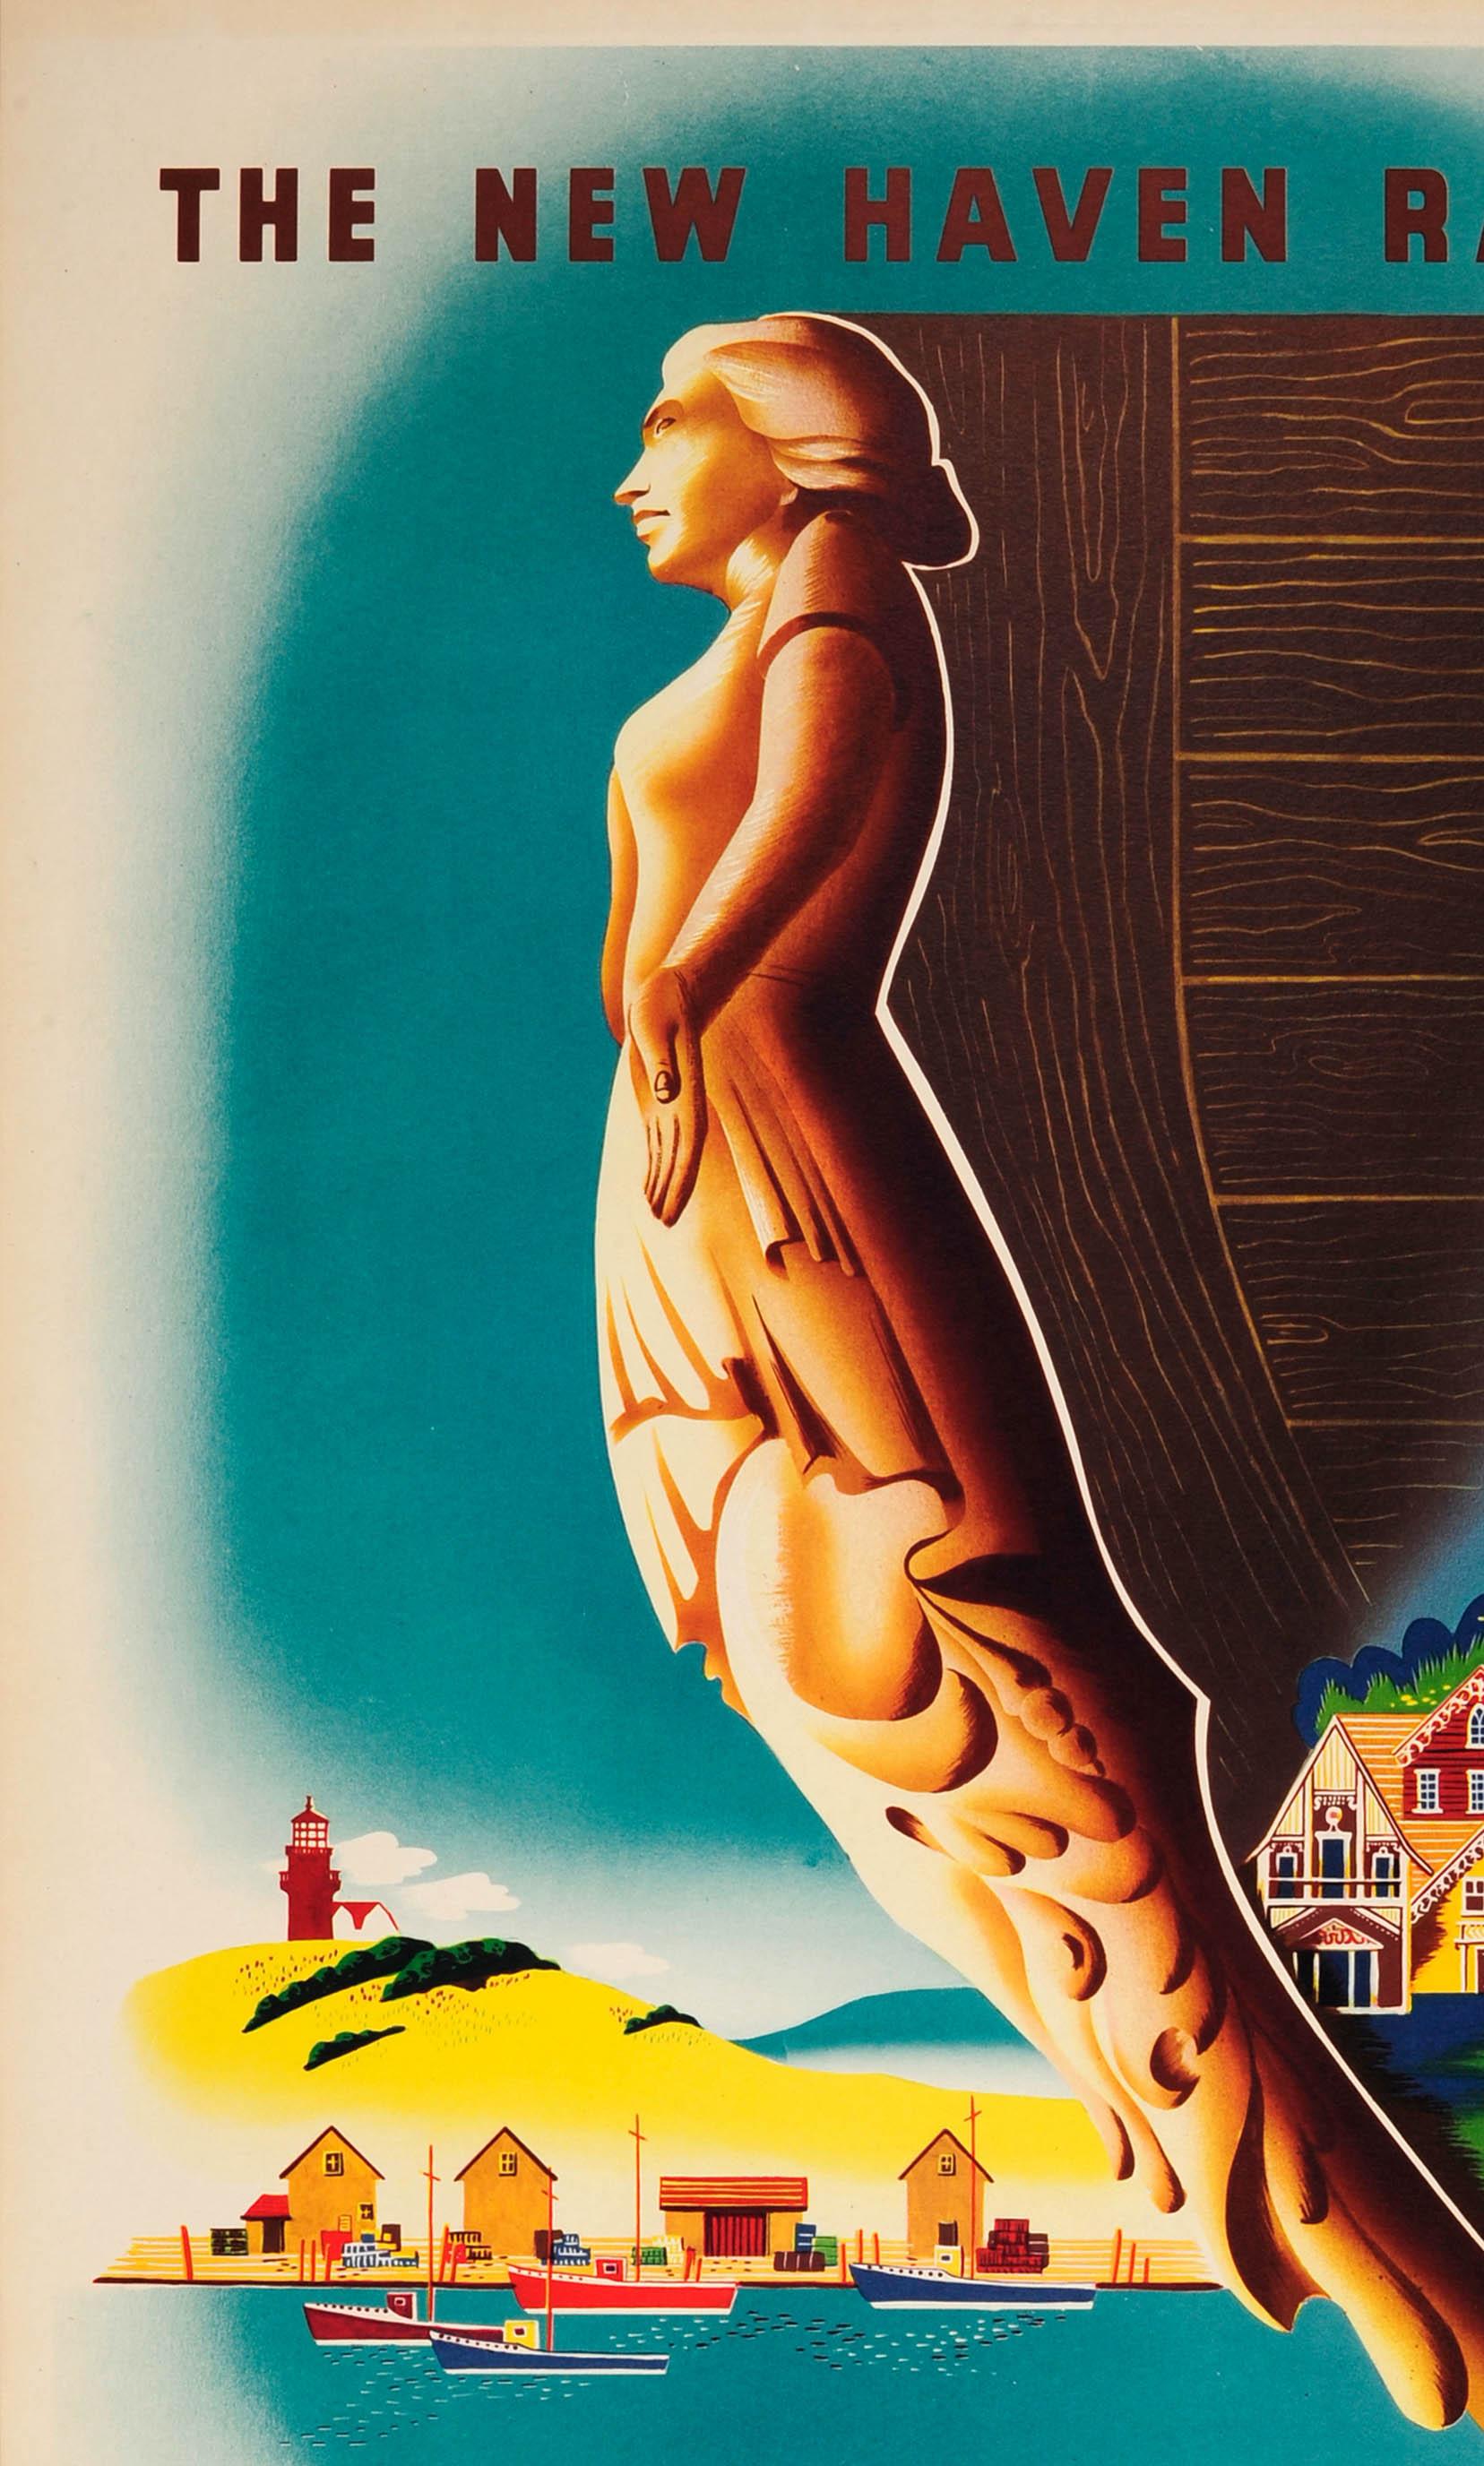 Affiche de voyage vintage originale pour Martha's Vineyard, publiée par le New Haven Railroad, présentant une illustration audacieuse d'une figure de proue devant un rivage avec des maisons colorées, des enfants jouant sur la plage et dans l'eau,